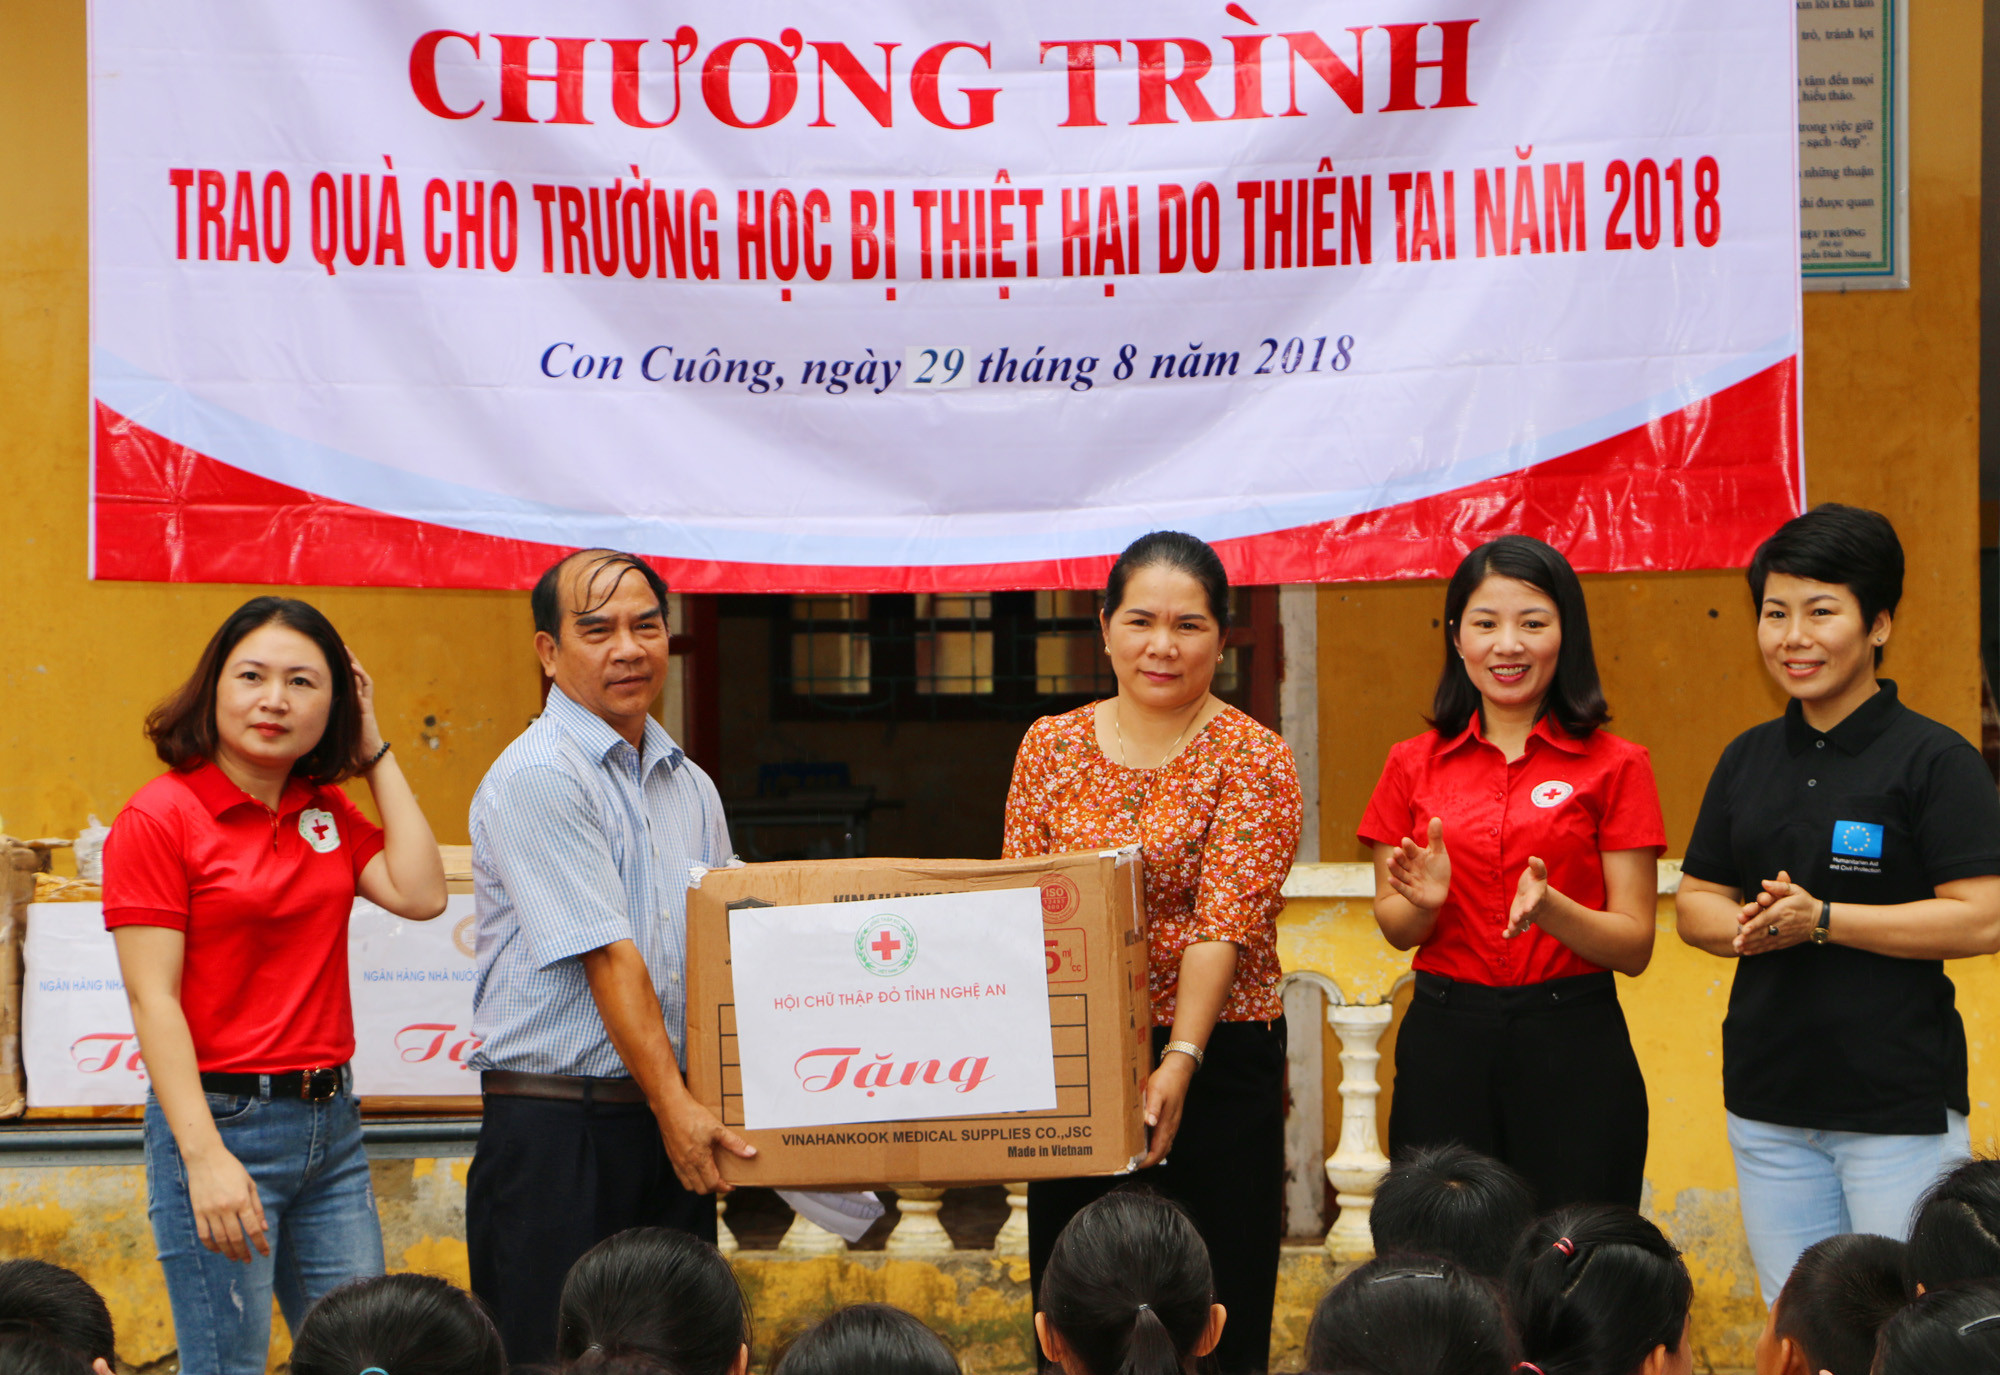 Hội chữ thập đỏ tỉnh trao quà hiện vật cho đại diện Ban giám hiệu Trường THPT Nội trú và THCS huyện Con Cuông. Ảnh: Nguyễn Hải